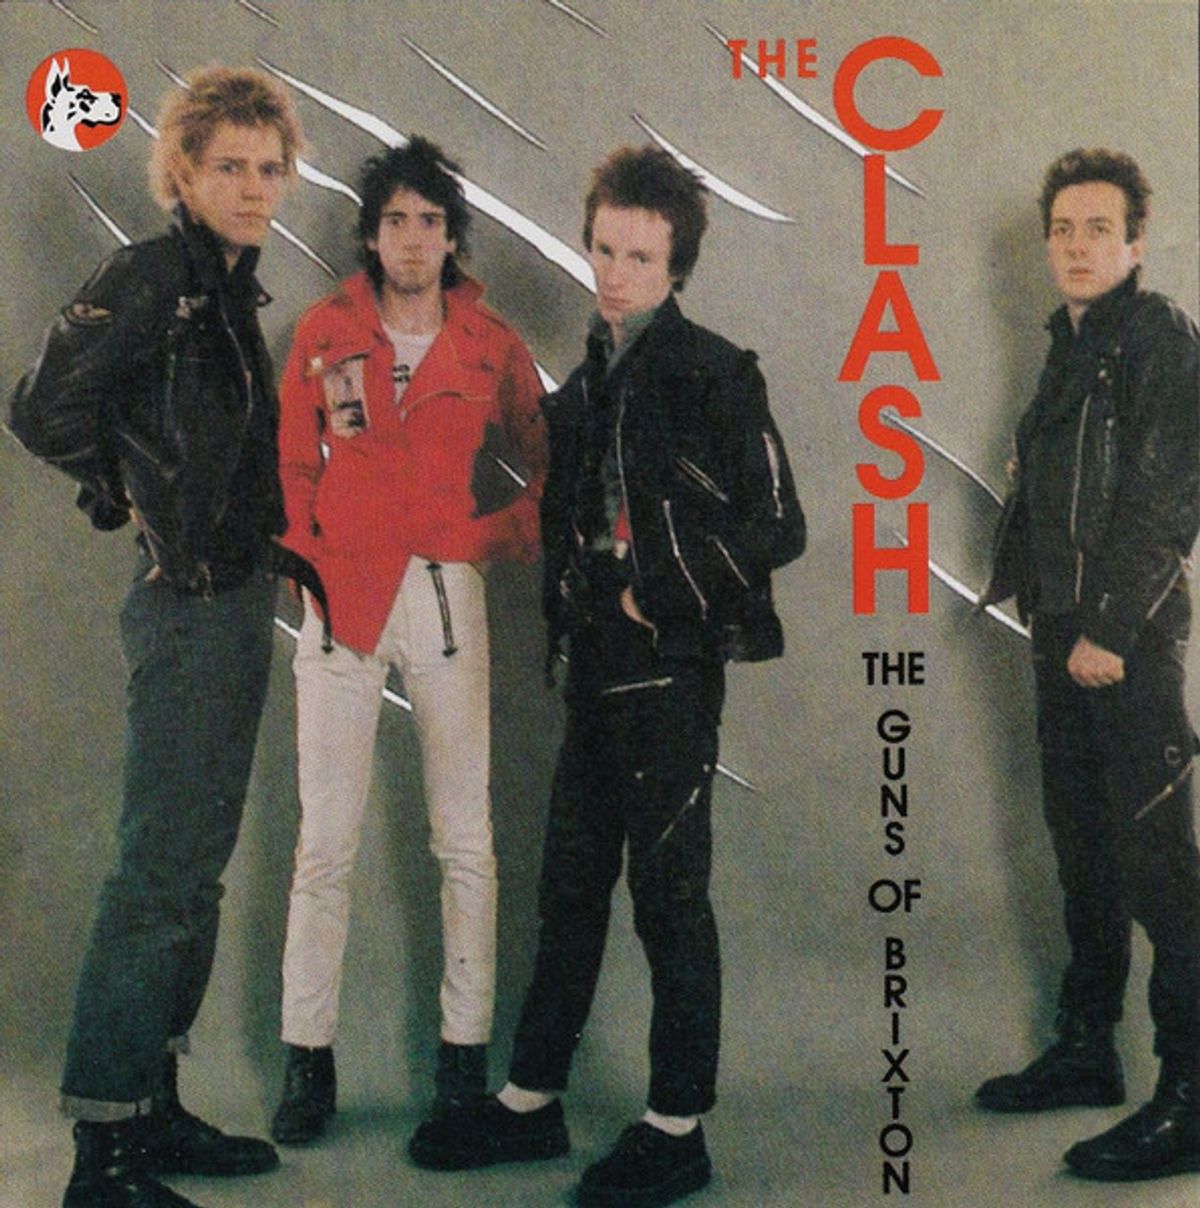 #StuartMurdochKiest - The Clash - Guns Of Brixton (1979)